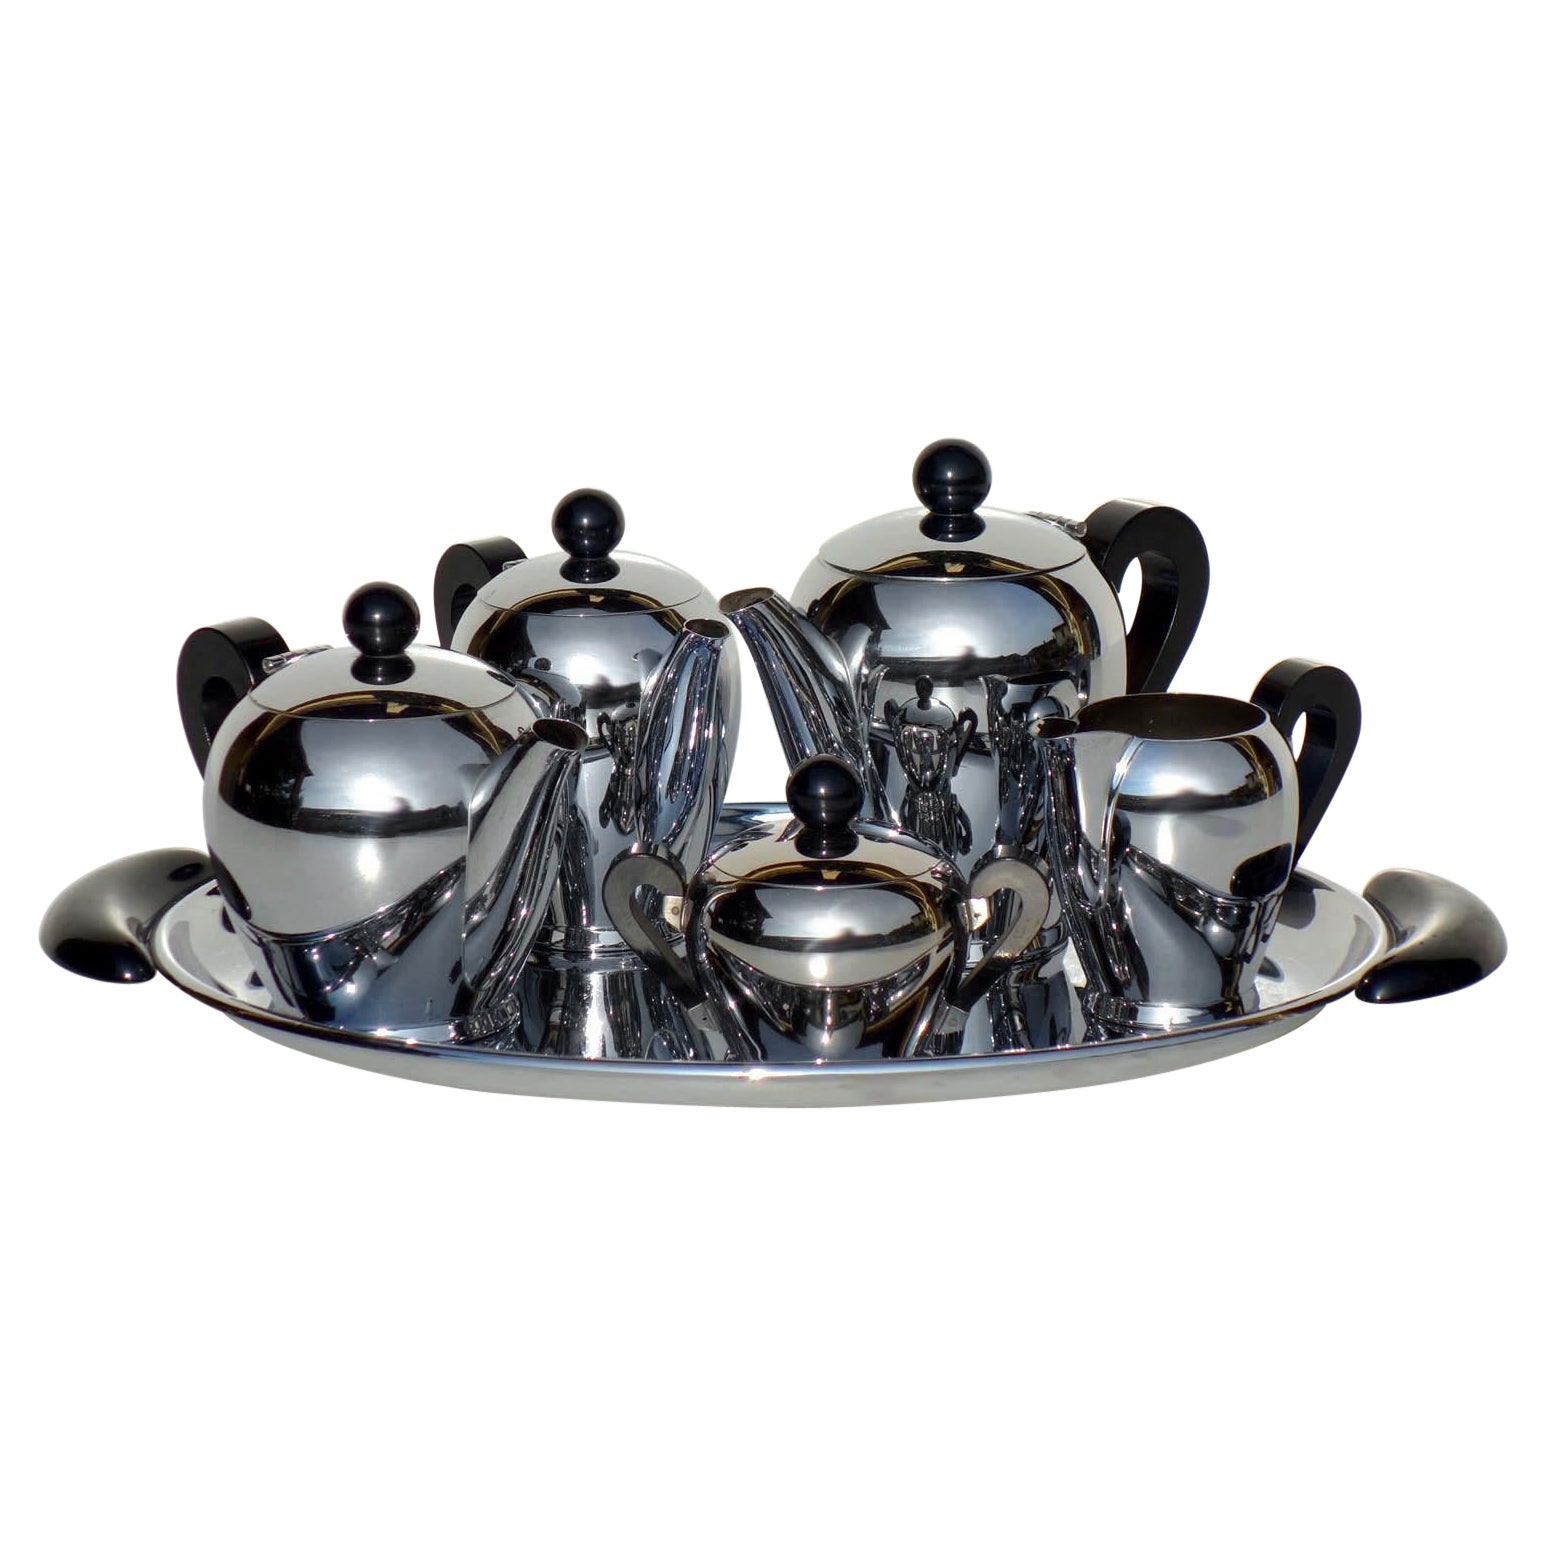 "Bombè" Carlo Alessi 1945 Italian Design Steel Metal Tea and Coffee Set